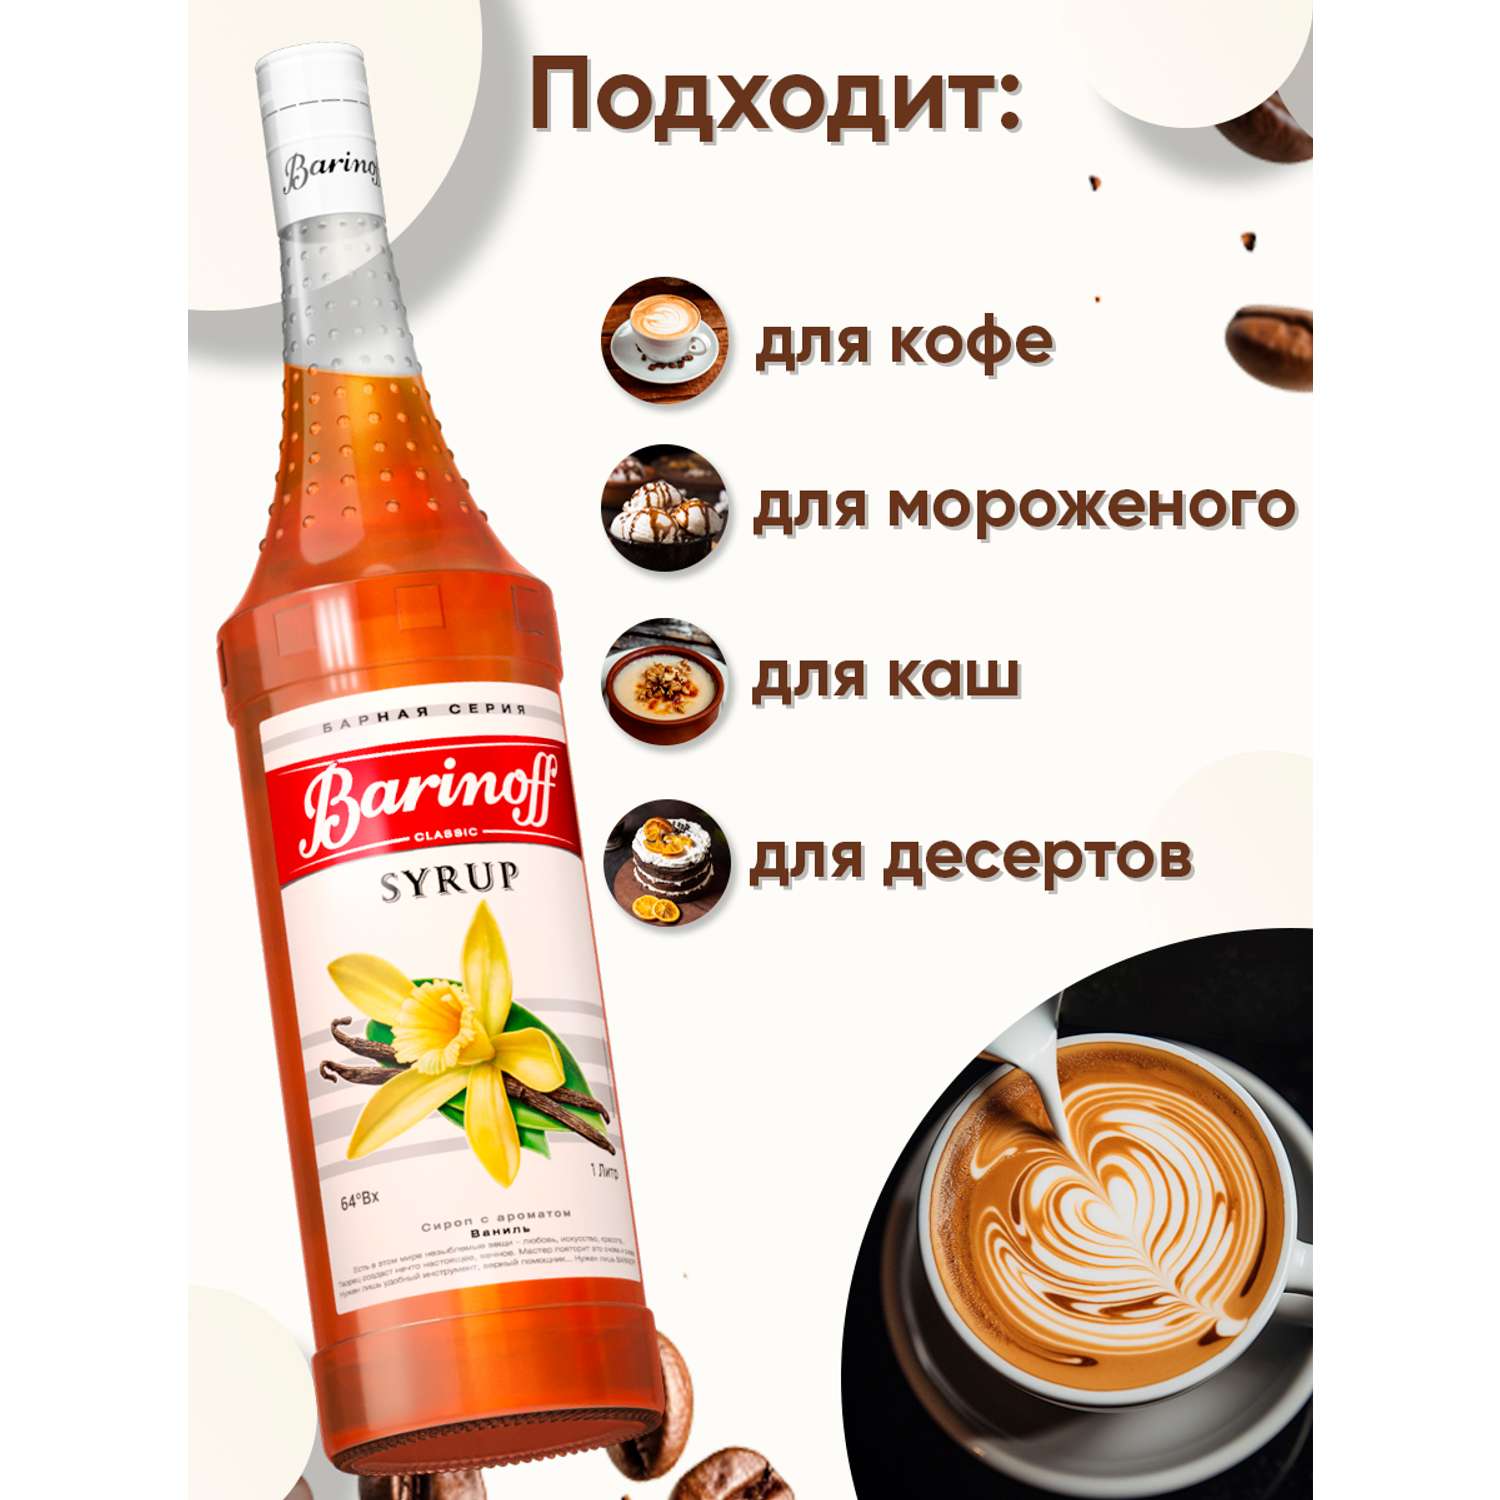 Сироп Barinoff Ваниль для кофе и коктейлей 1л - фото 2